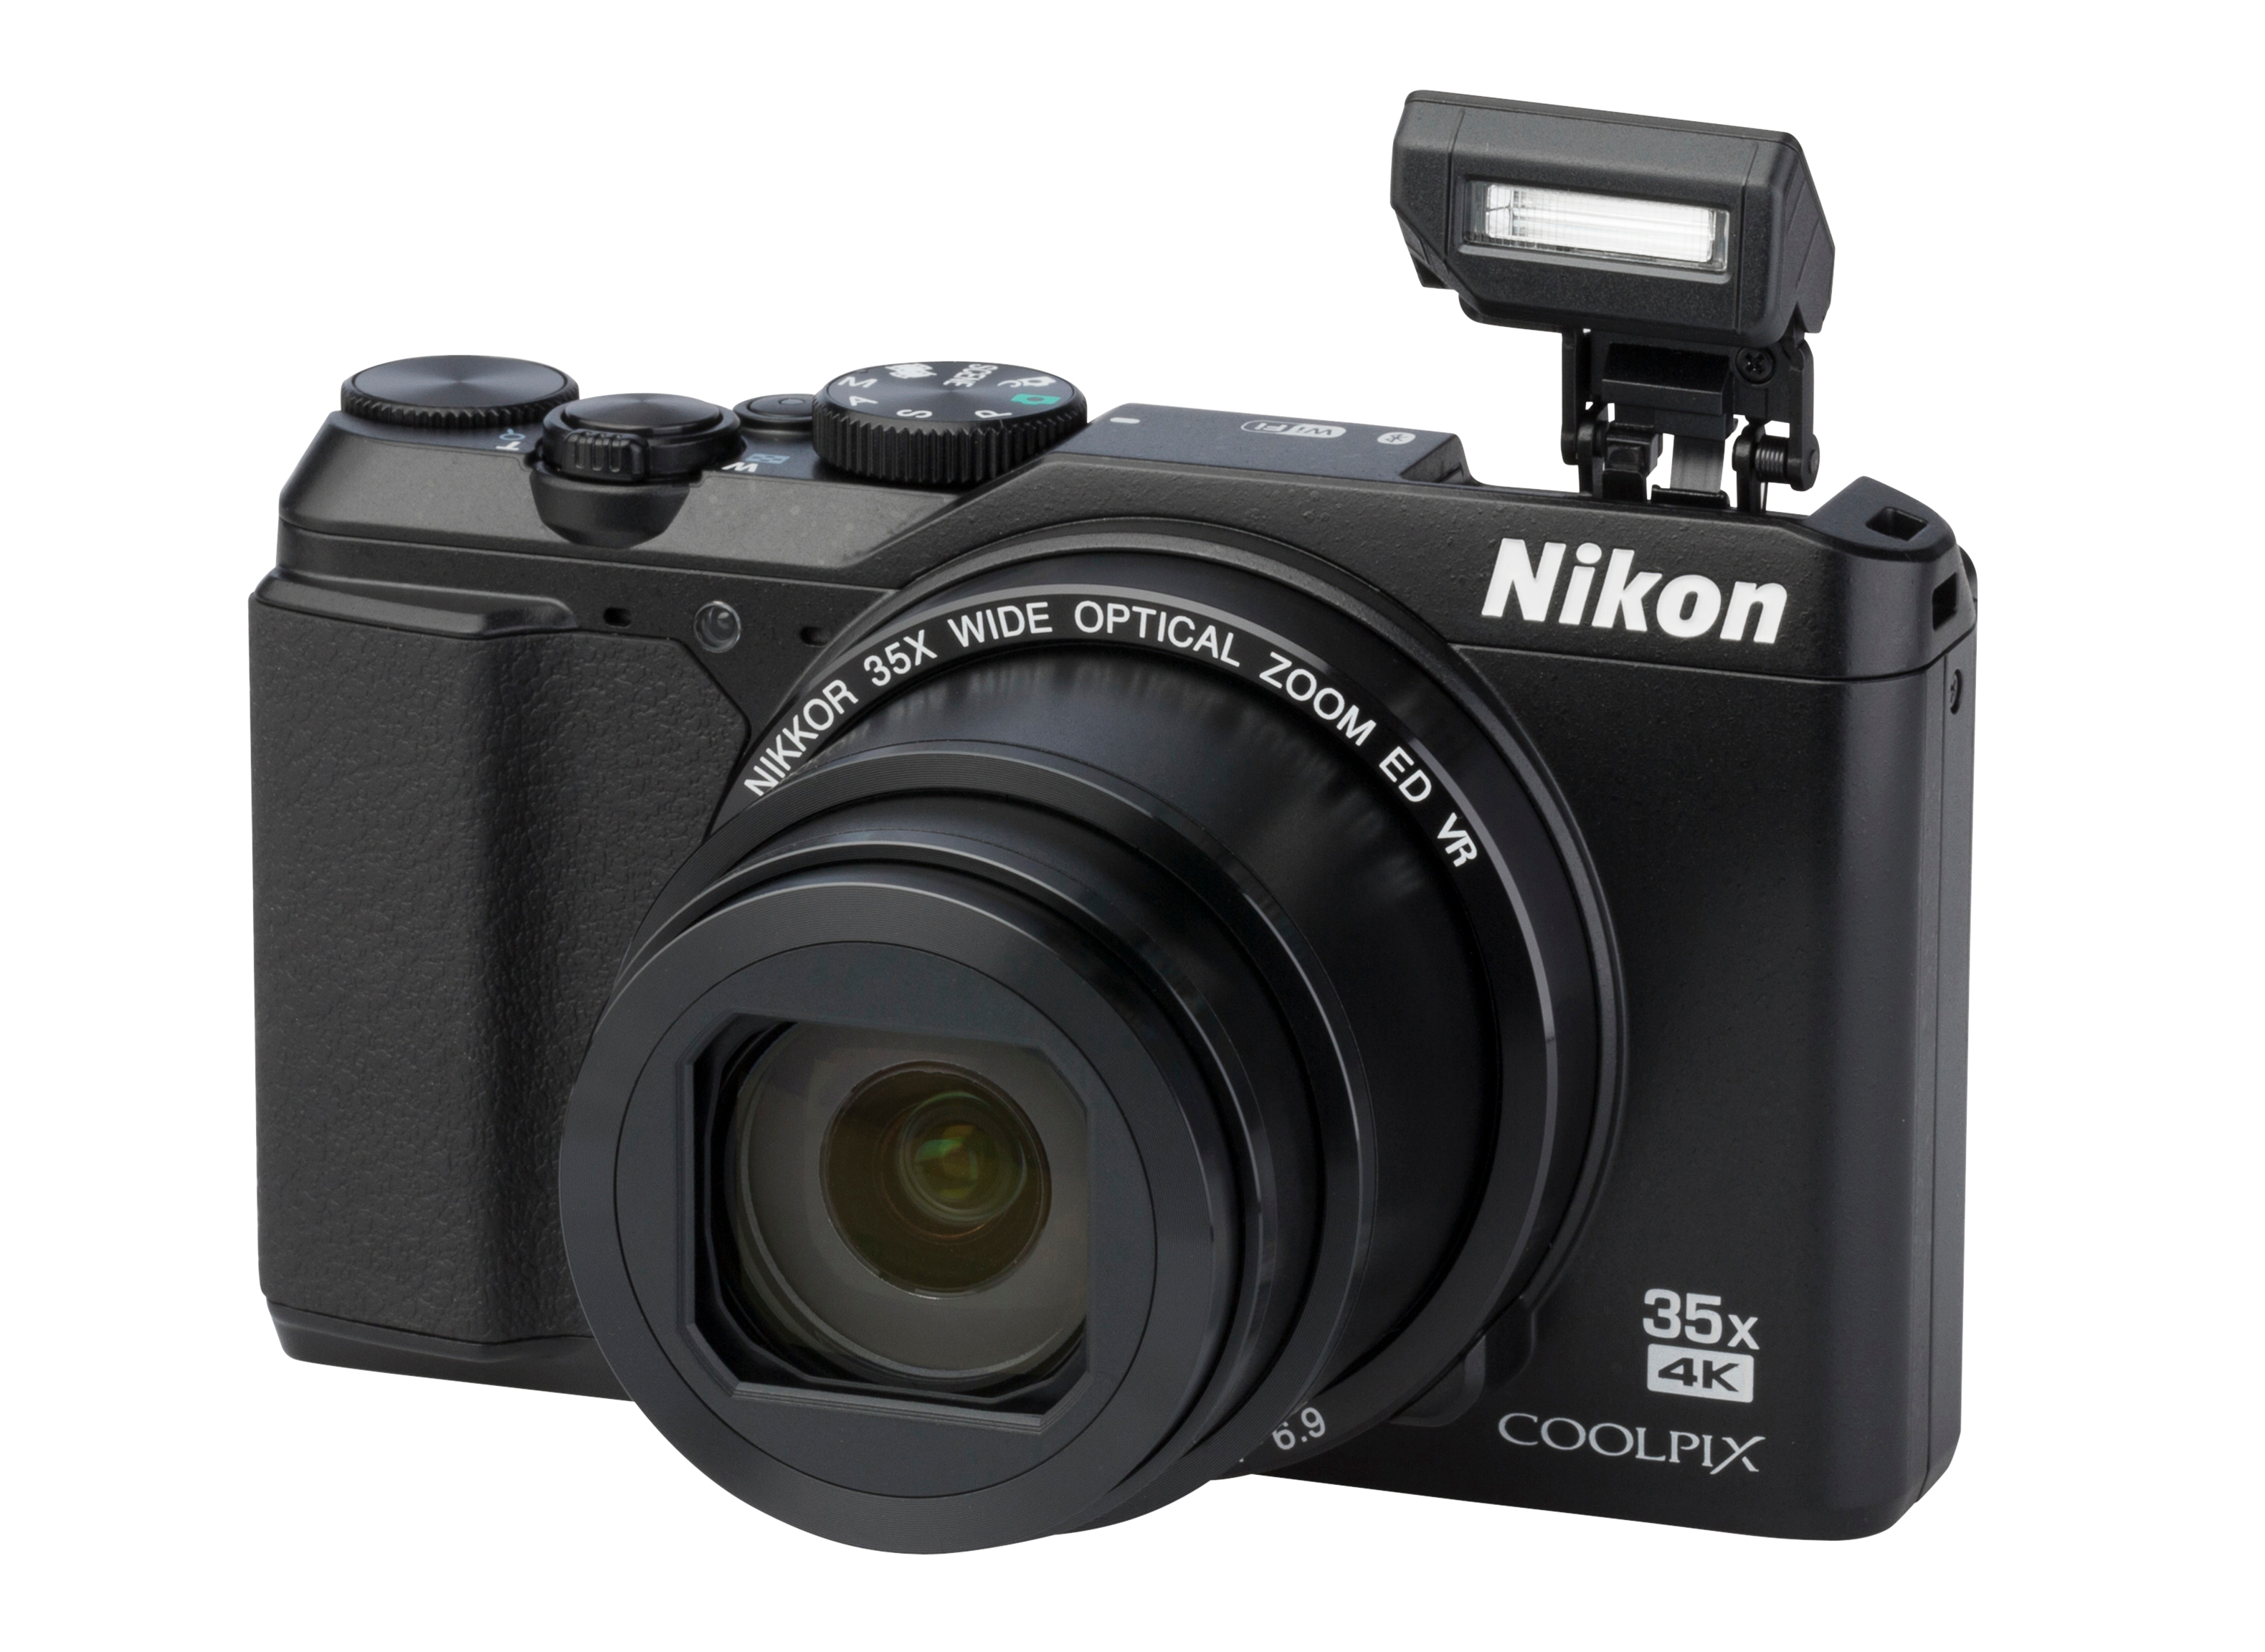 Nikon Coolpix A900 Camera Review - Consumer Reports